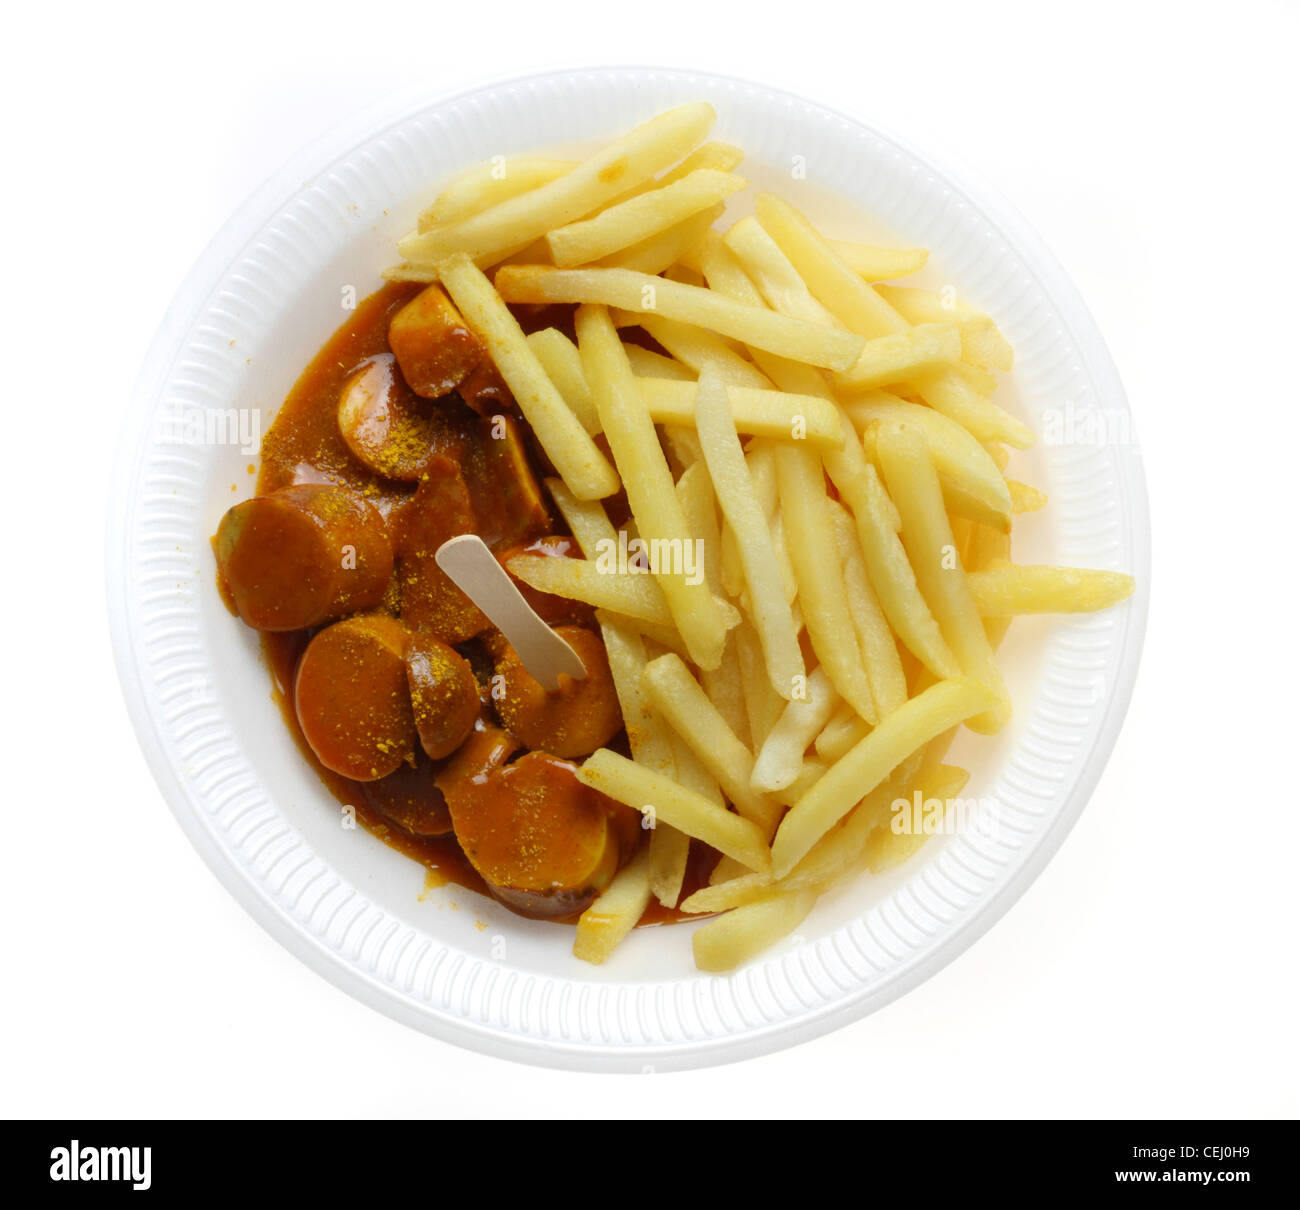 Ernährung, Fast-Food. Pommes Frites mit einer Currywurst, eine Bratwurst-Stil-Wurst mit pikantem Curry und Tomatensauce. Stockfoto